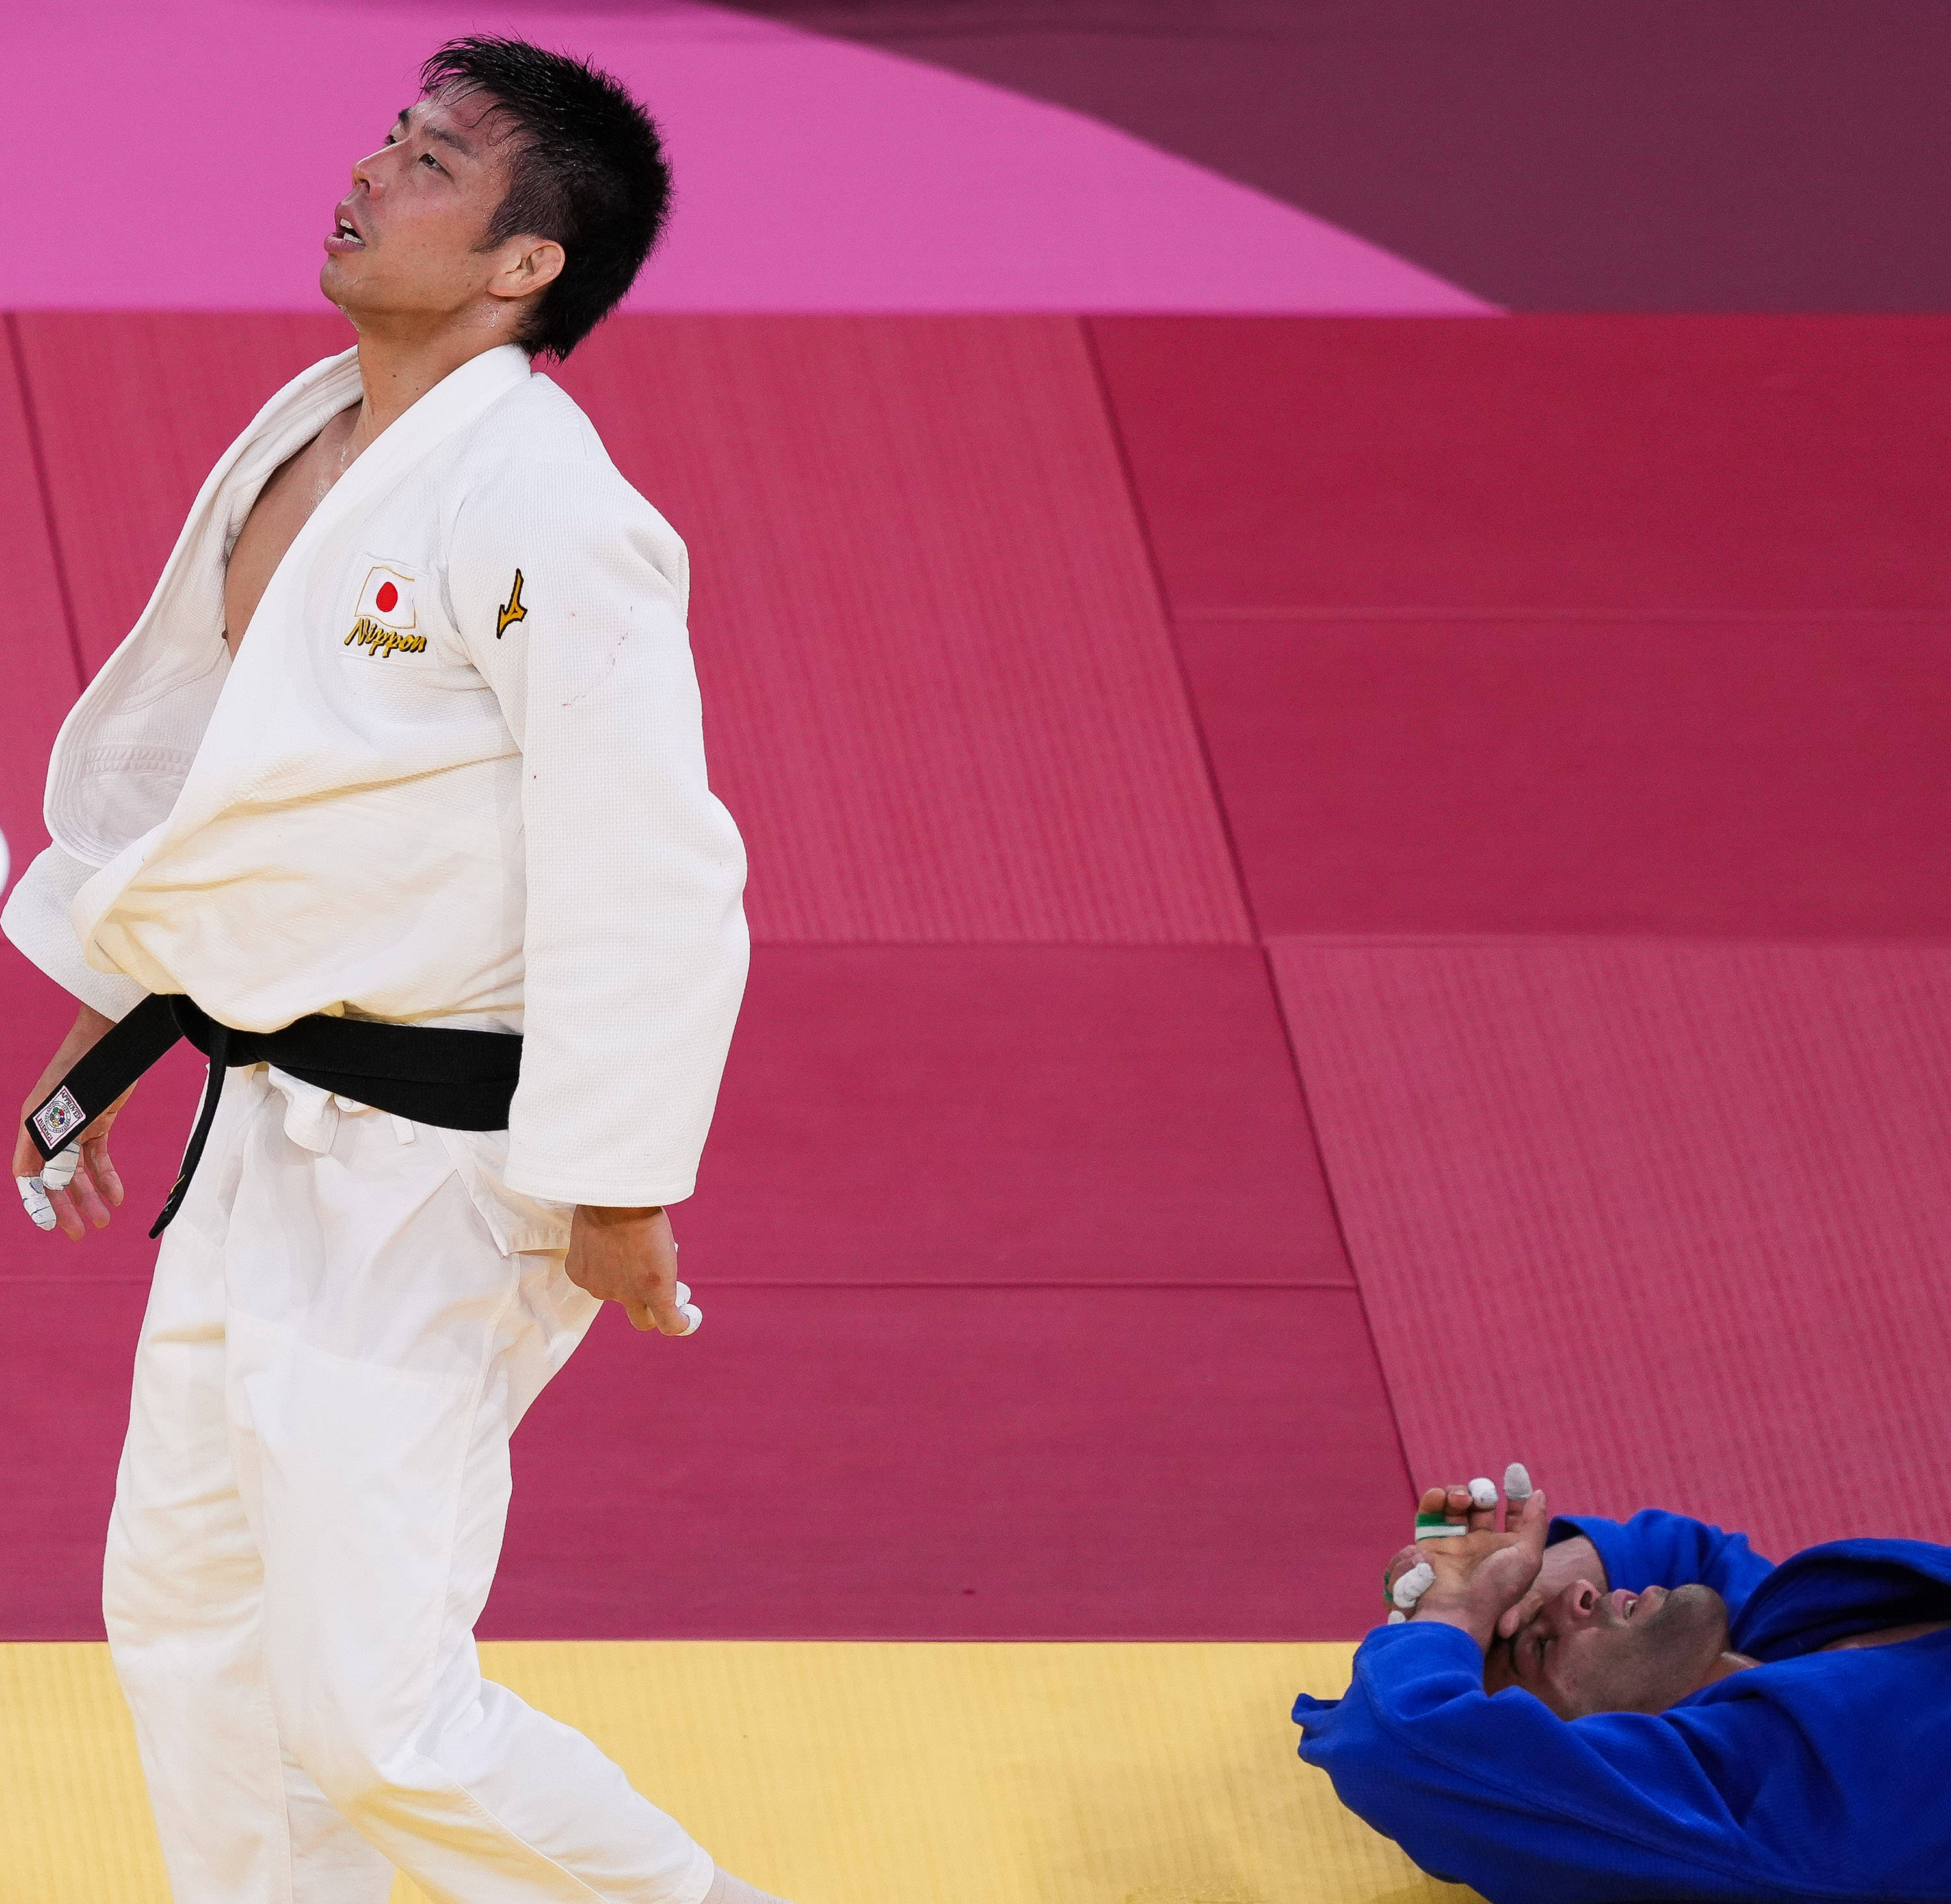 新华社记者 刘大伟 摄当日,在东京奥运会柔道男子81公斤级决赛中,日本